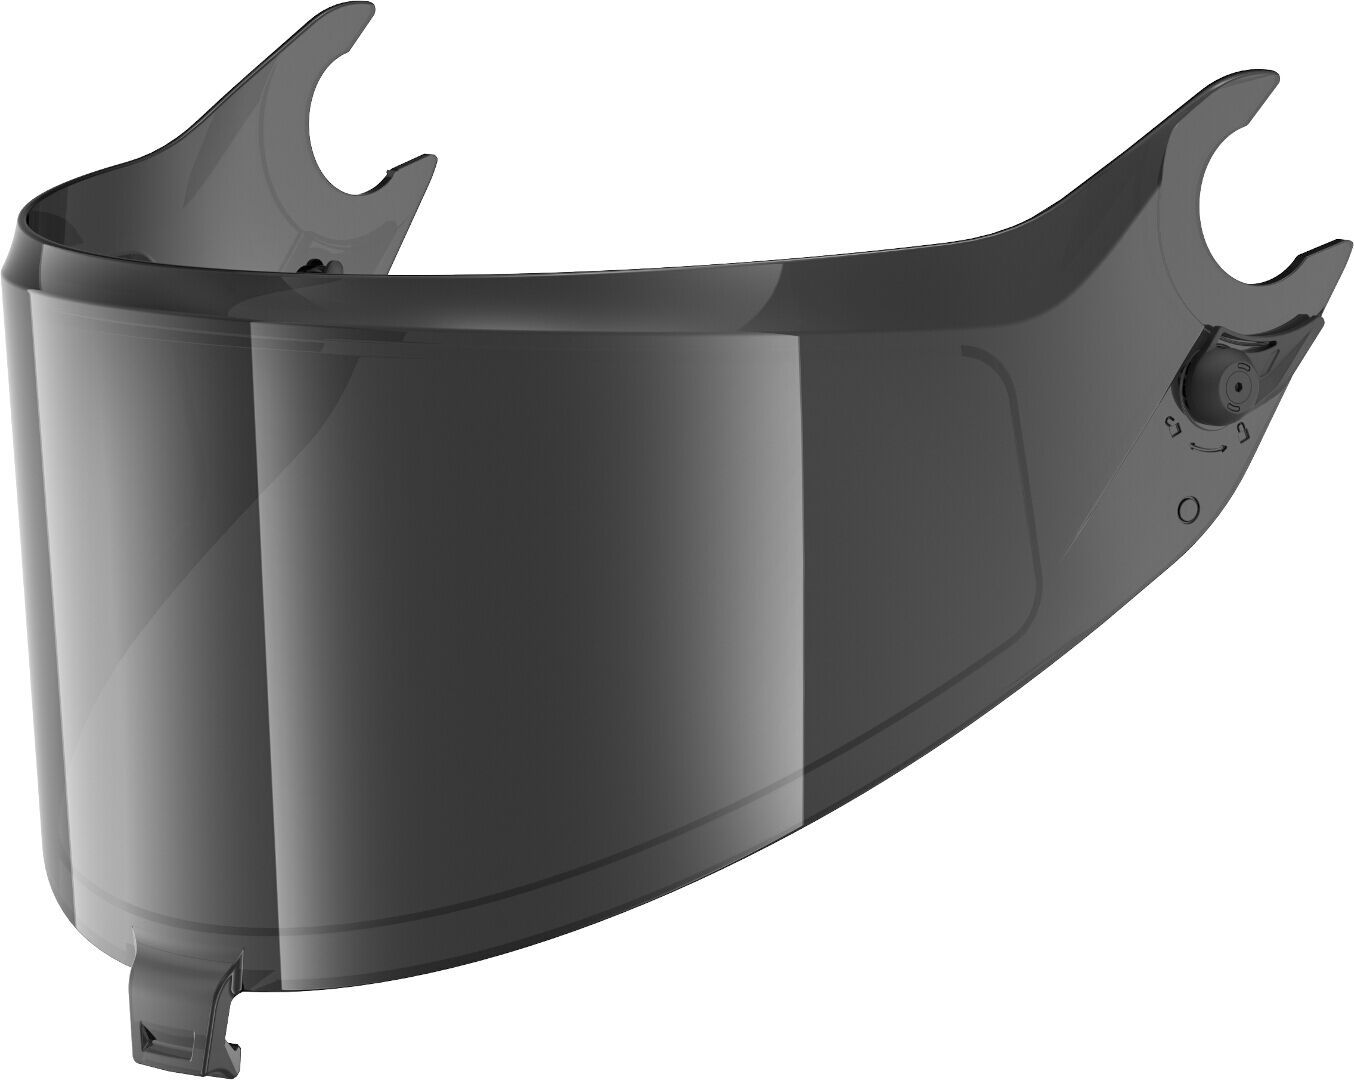 Shark Spartan GT/GT Pro/RS Visor teñido oscuro - Gris (un tamaño)